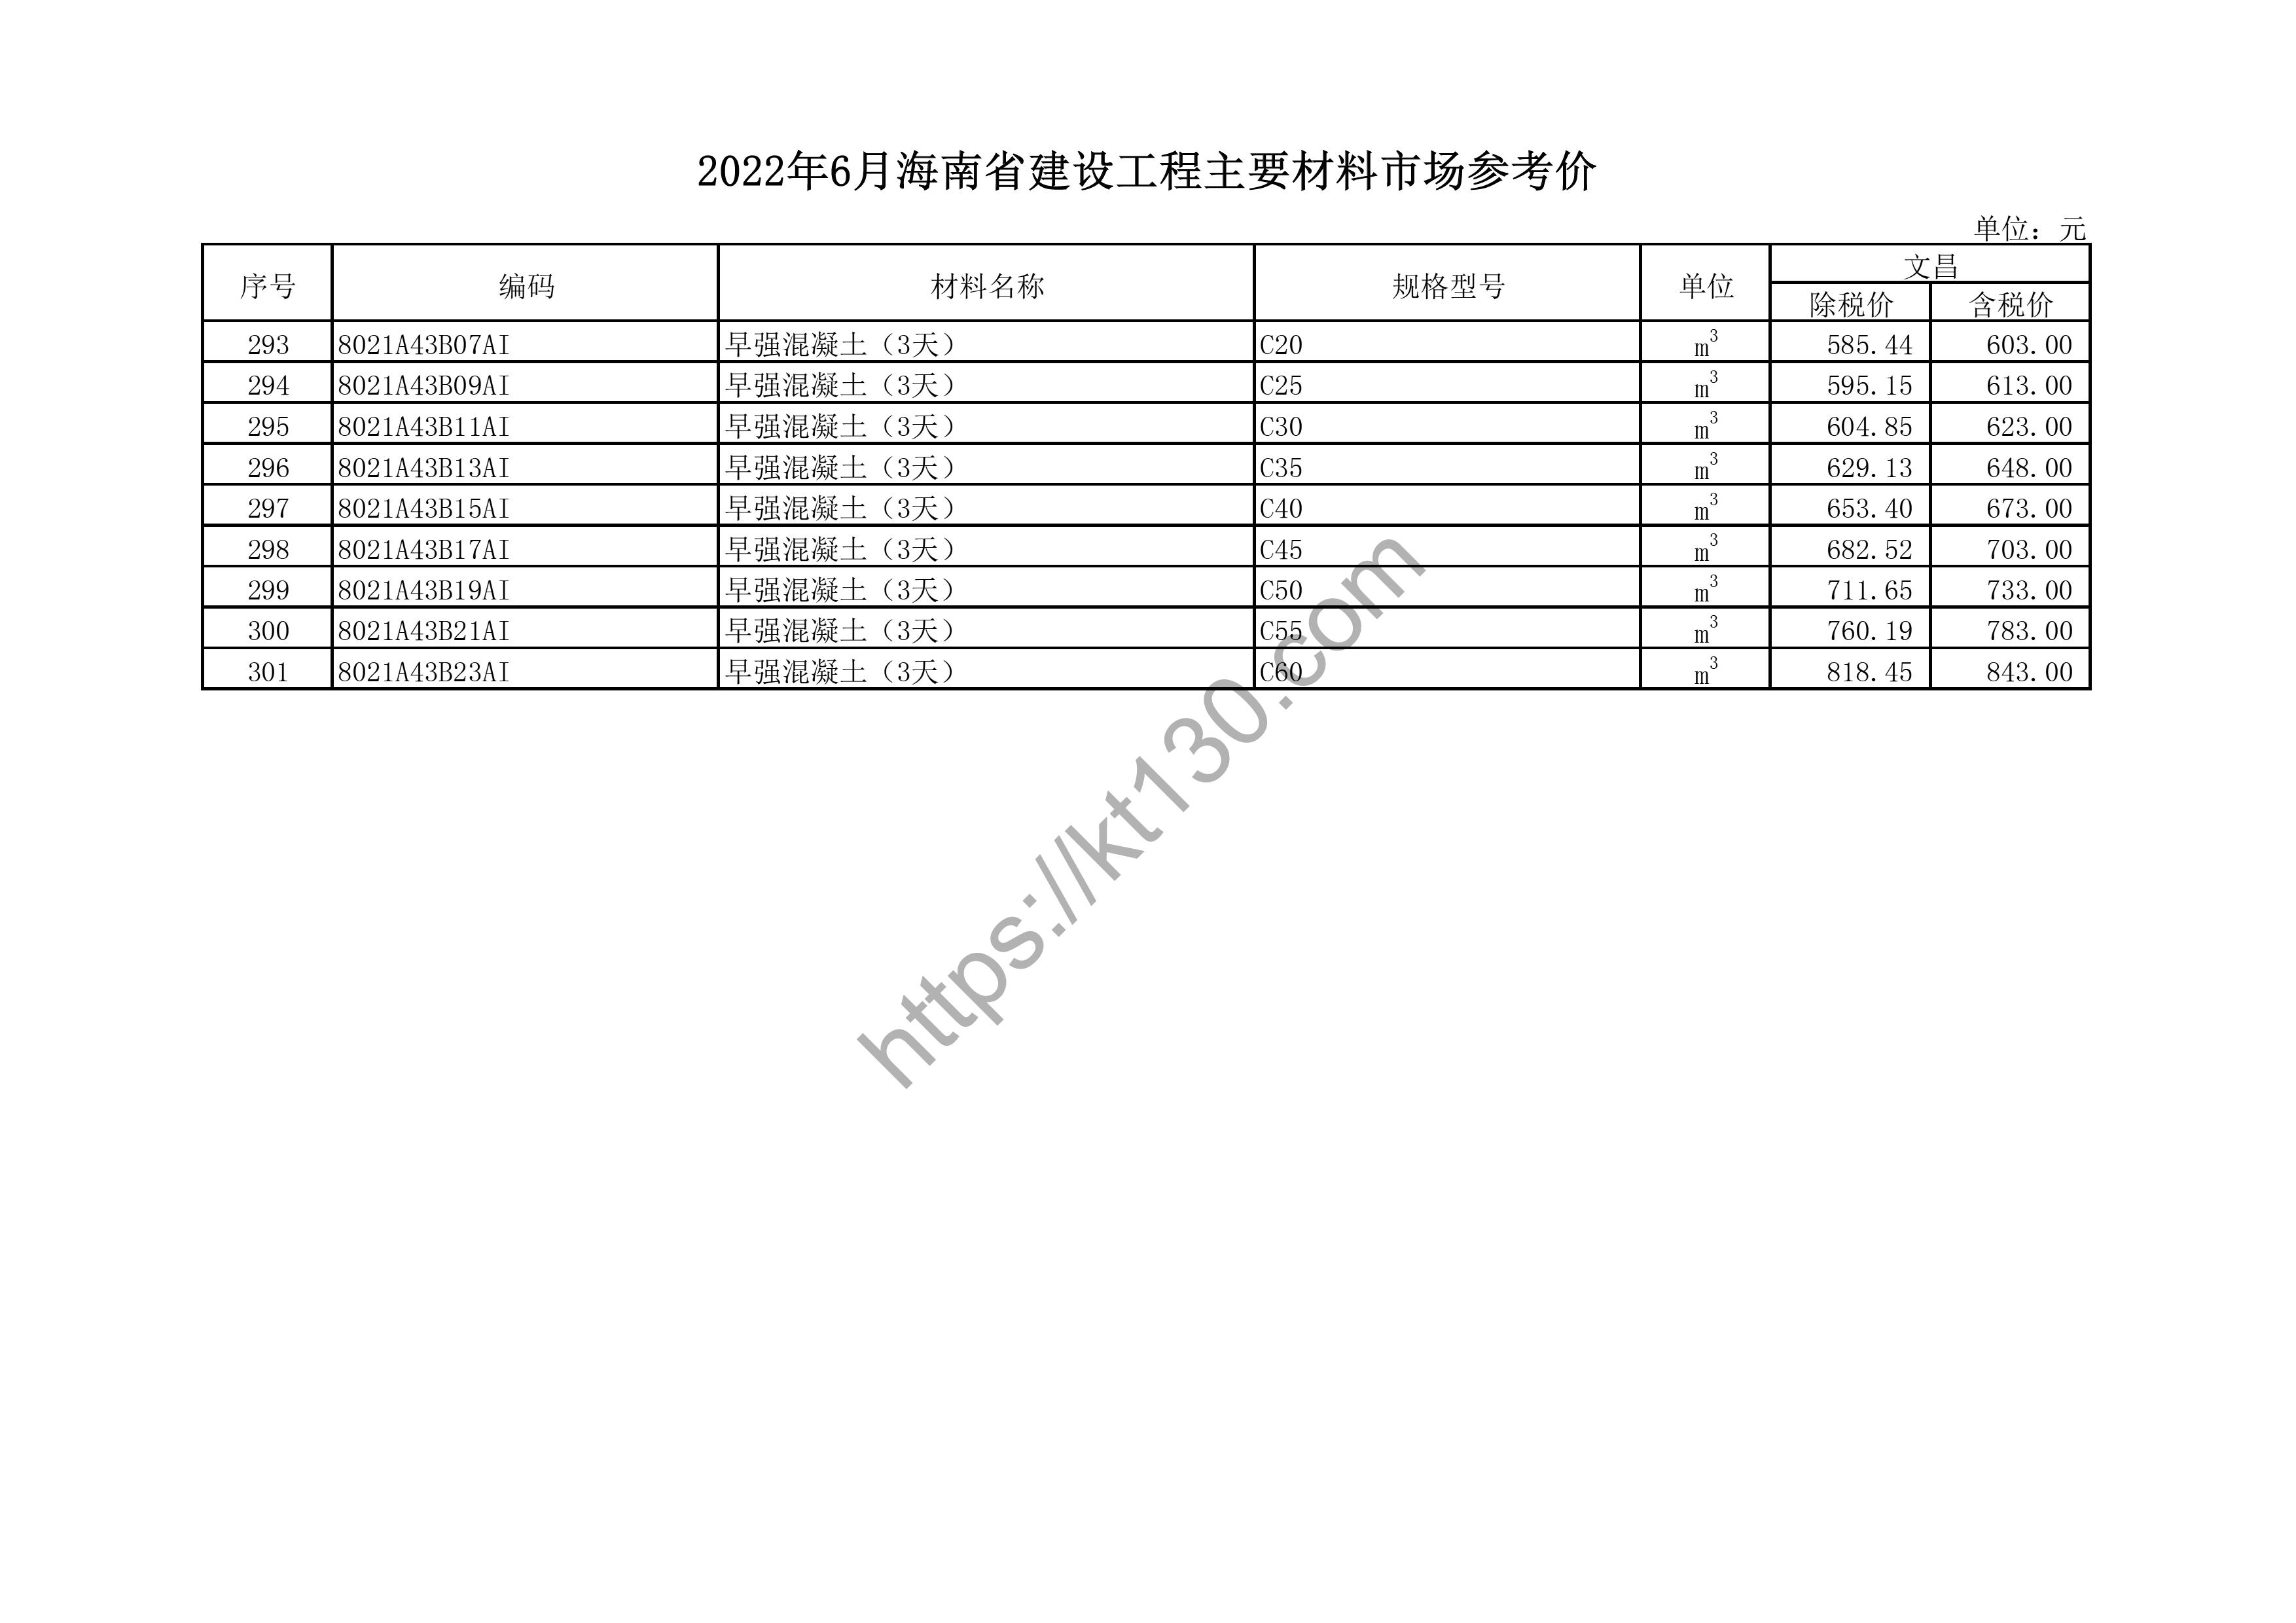 海南省2022年6月建筑材料价_PPR管材_44461